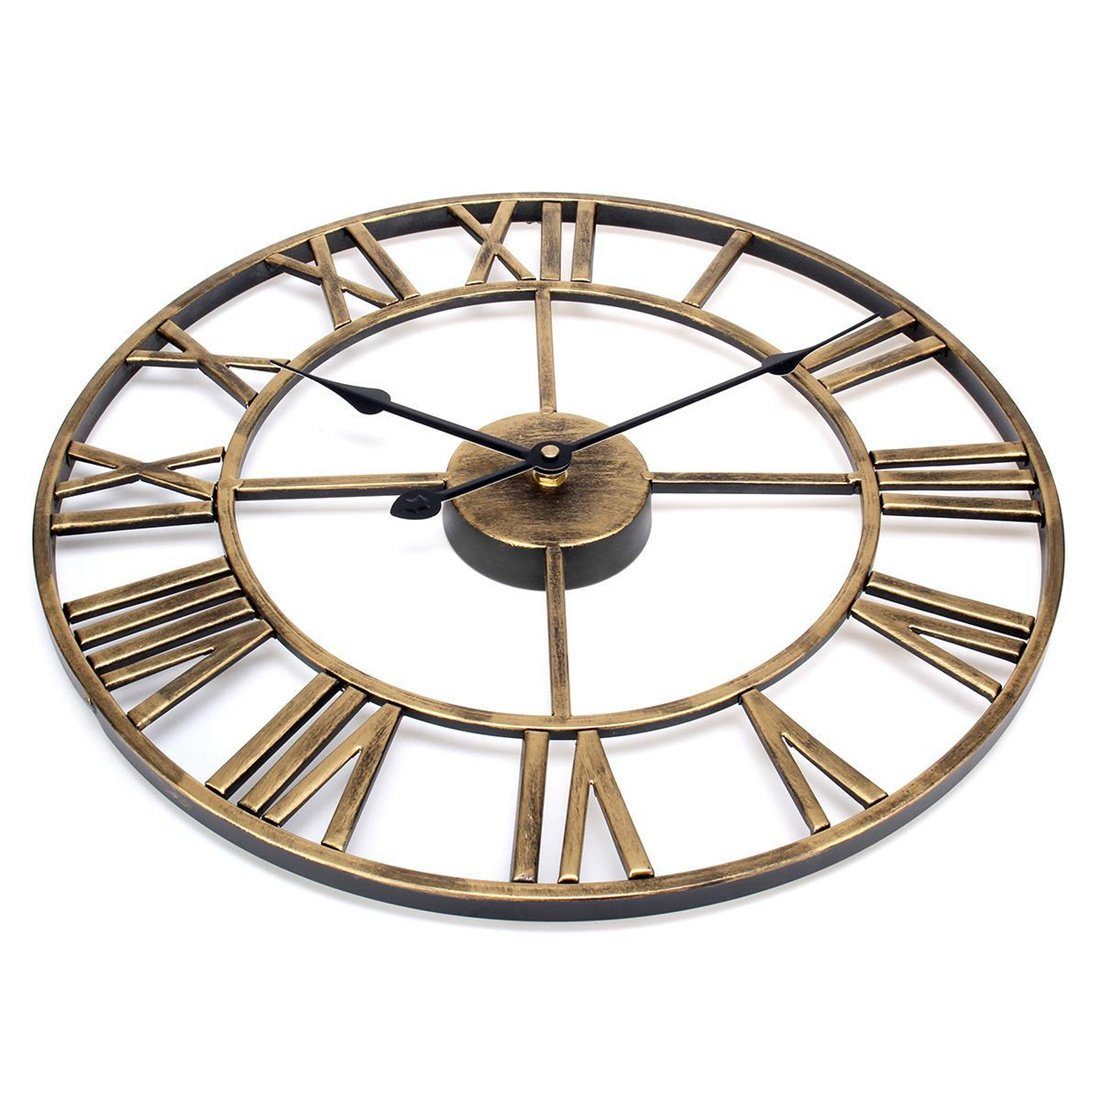 DÖRÖY Wanduhr 40cm Römische Wanduhr Vintage-Wanduhr stille Gold Eisen, kreative Uhr, aus